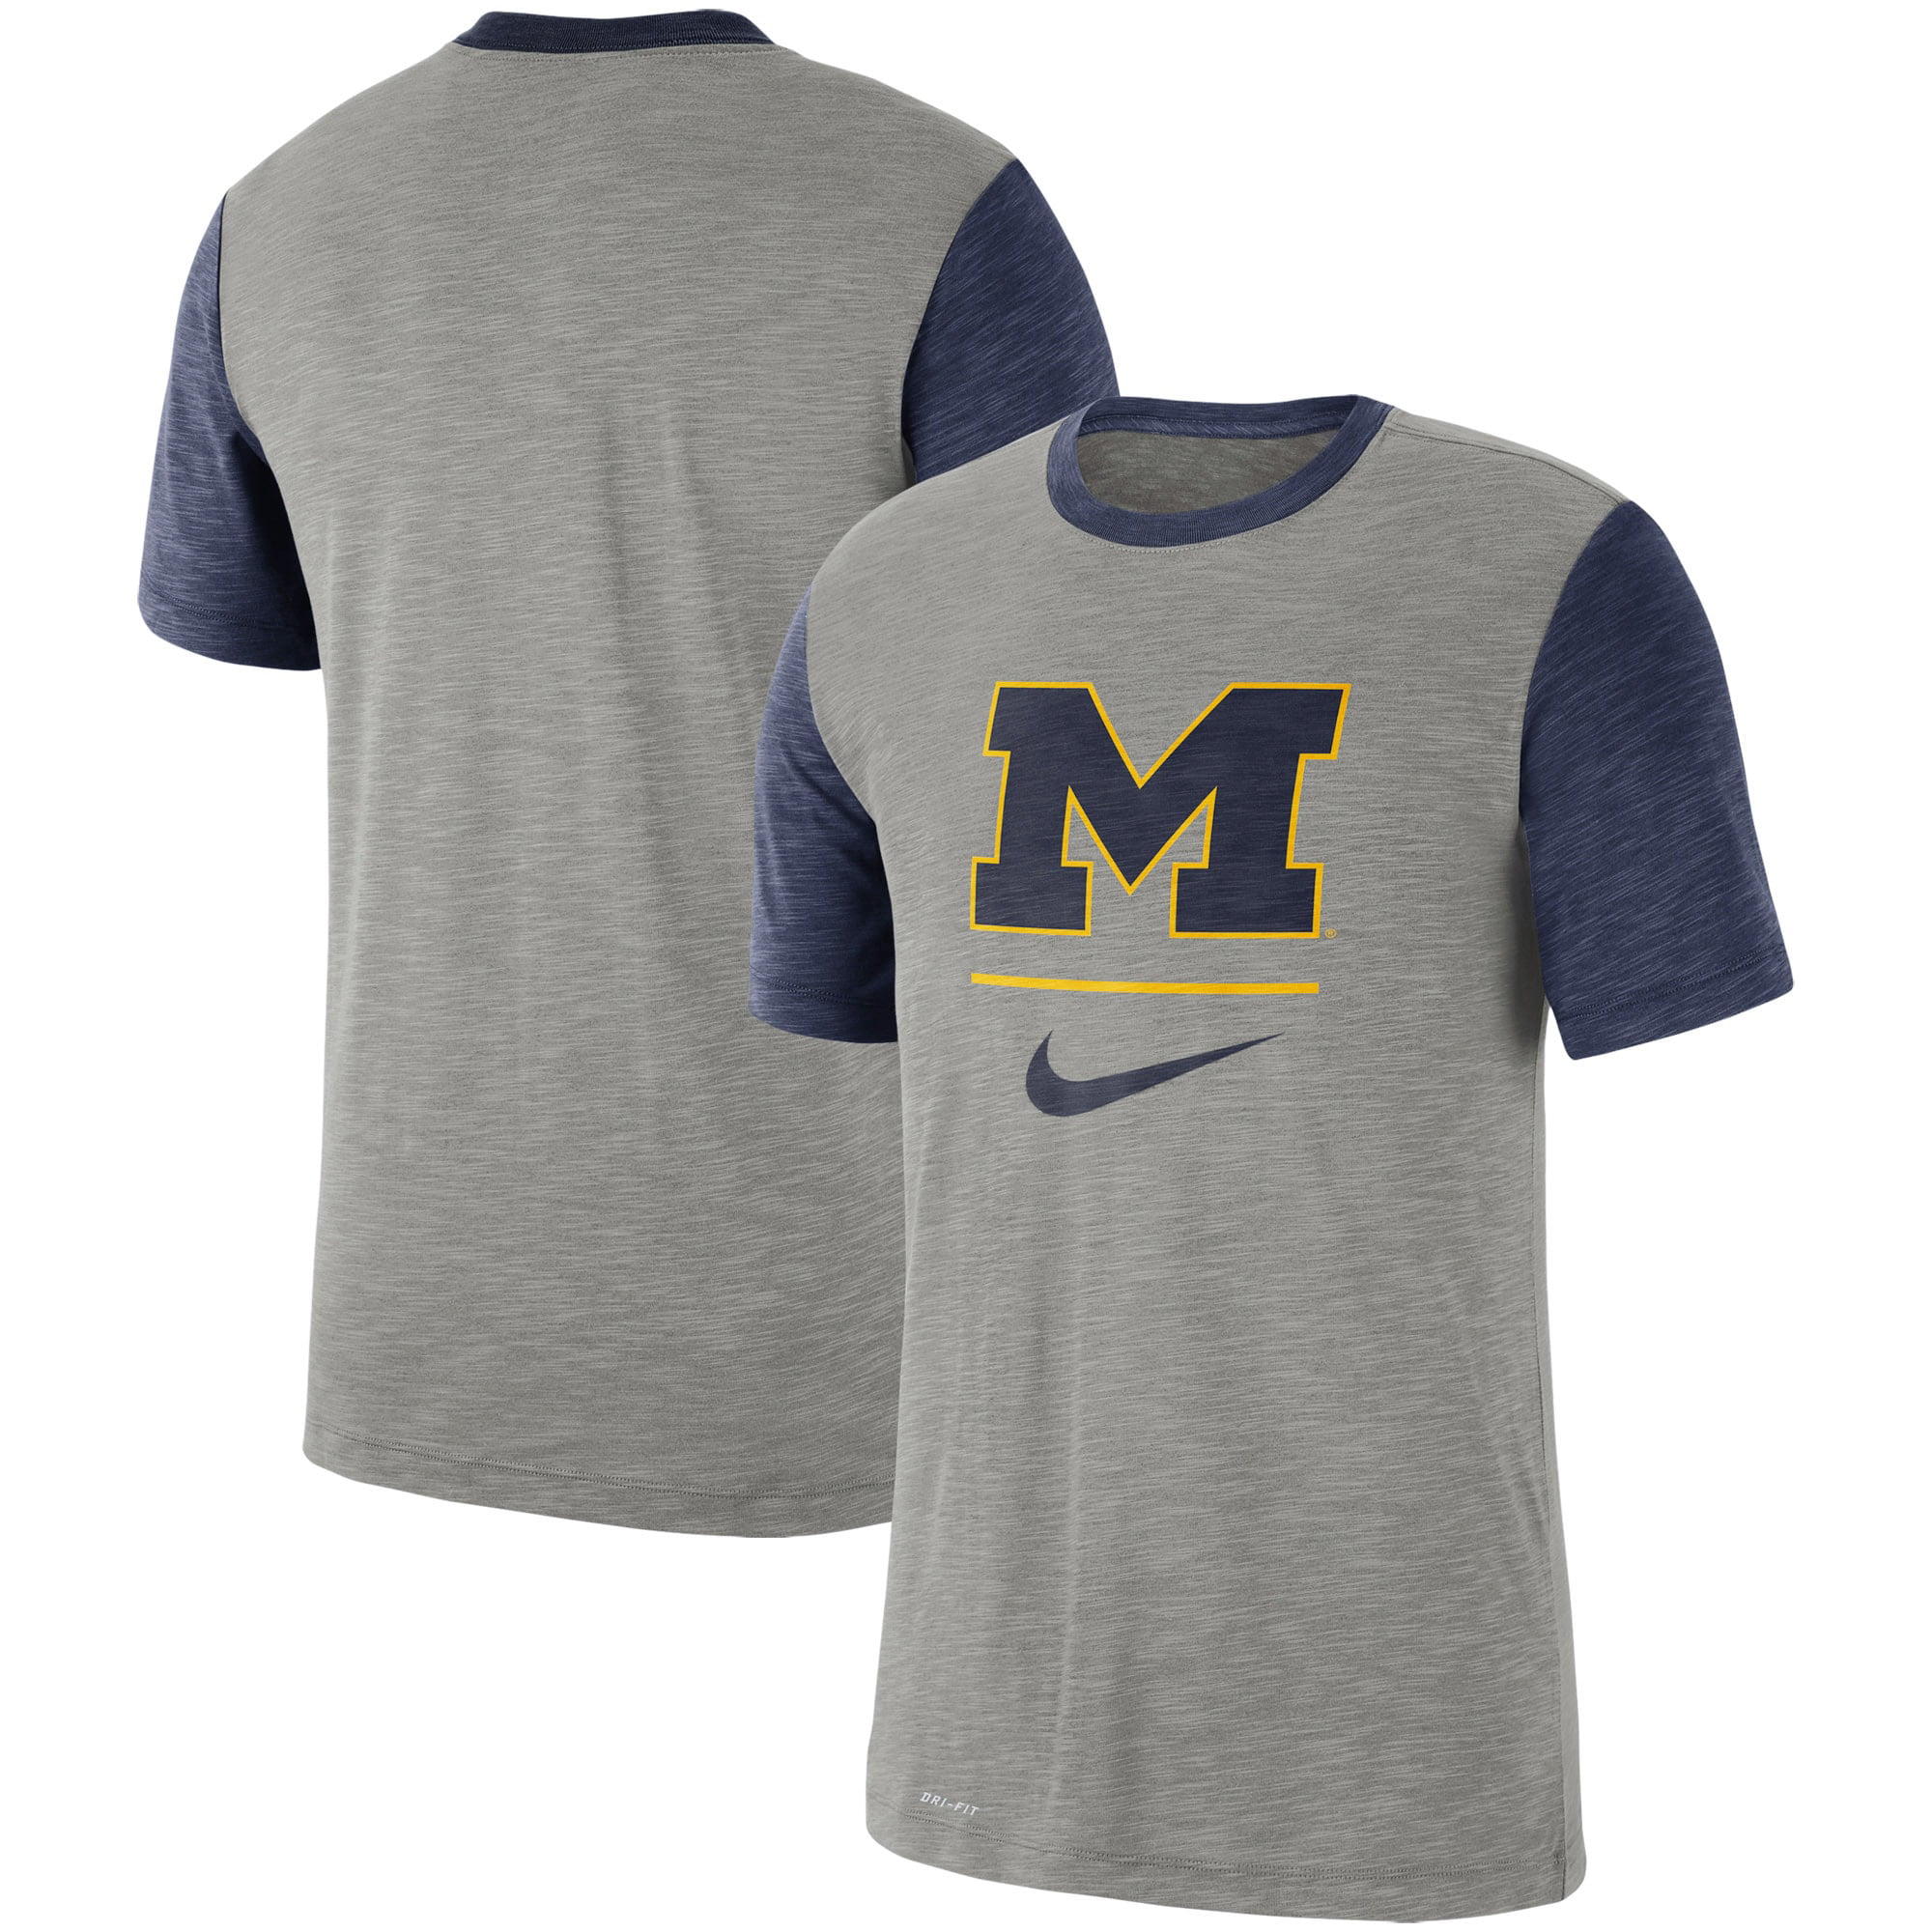 Michigan Wolverines Nike Baseball Performance Cotton Slub T-Shirt ...